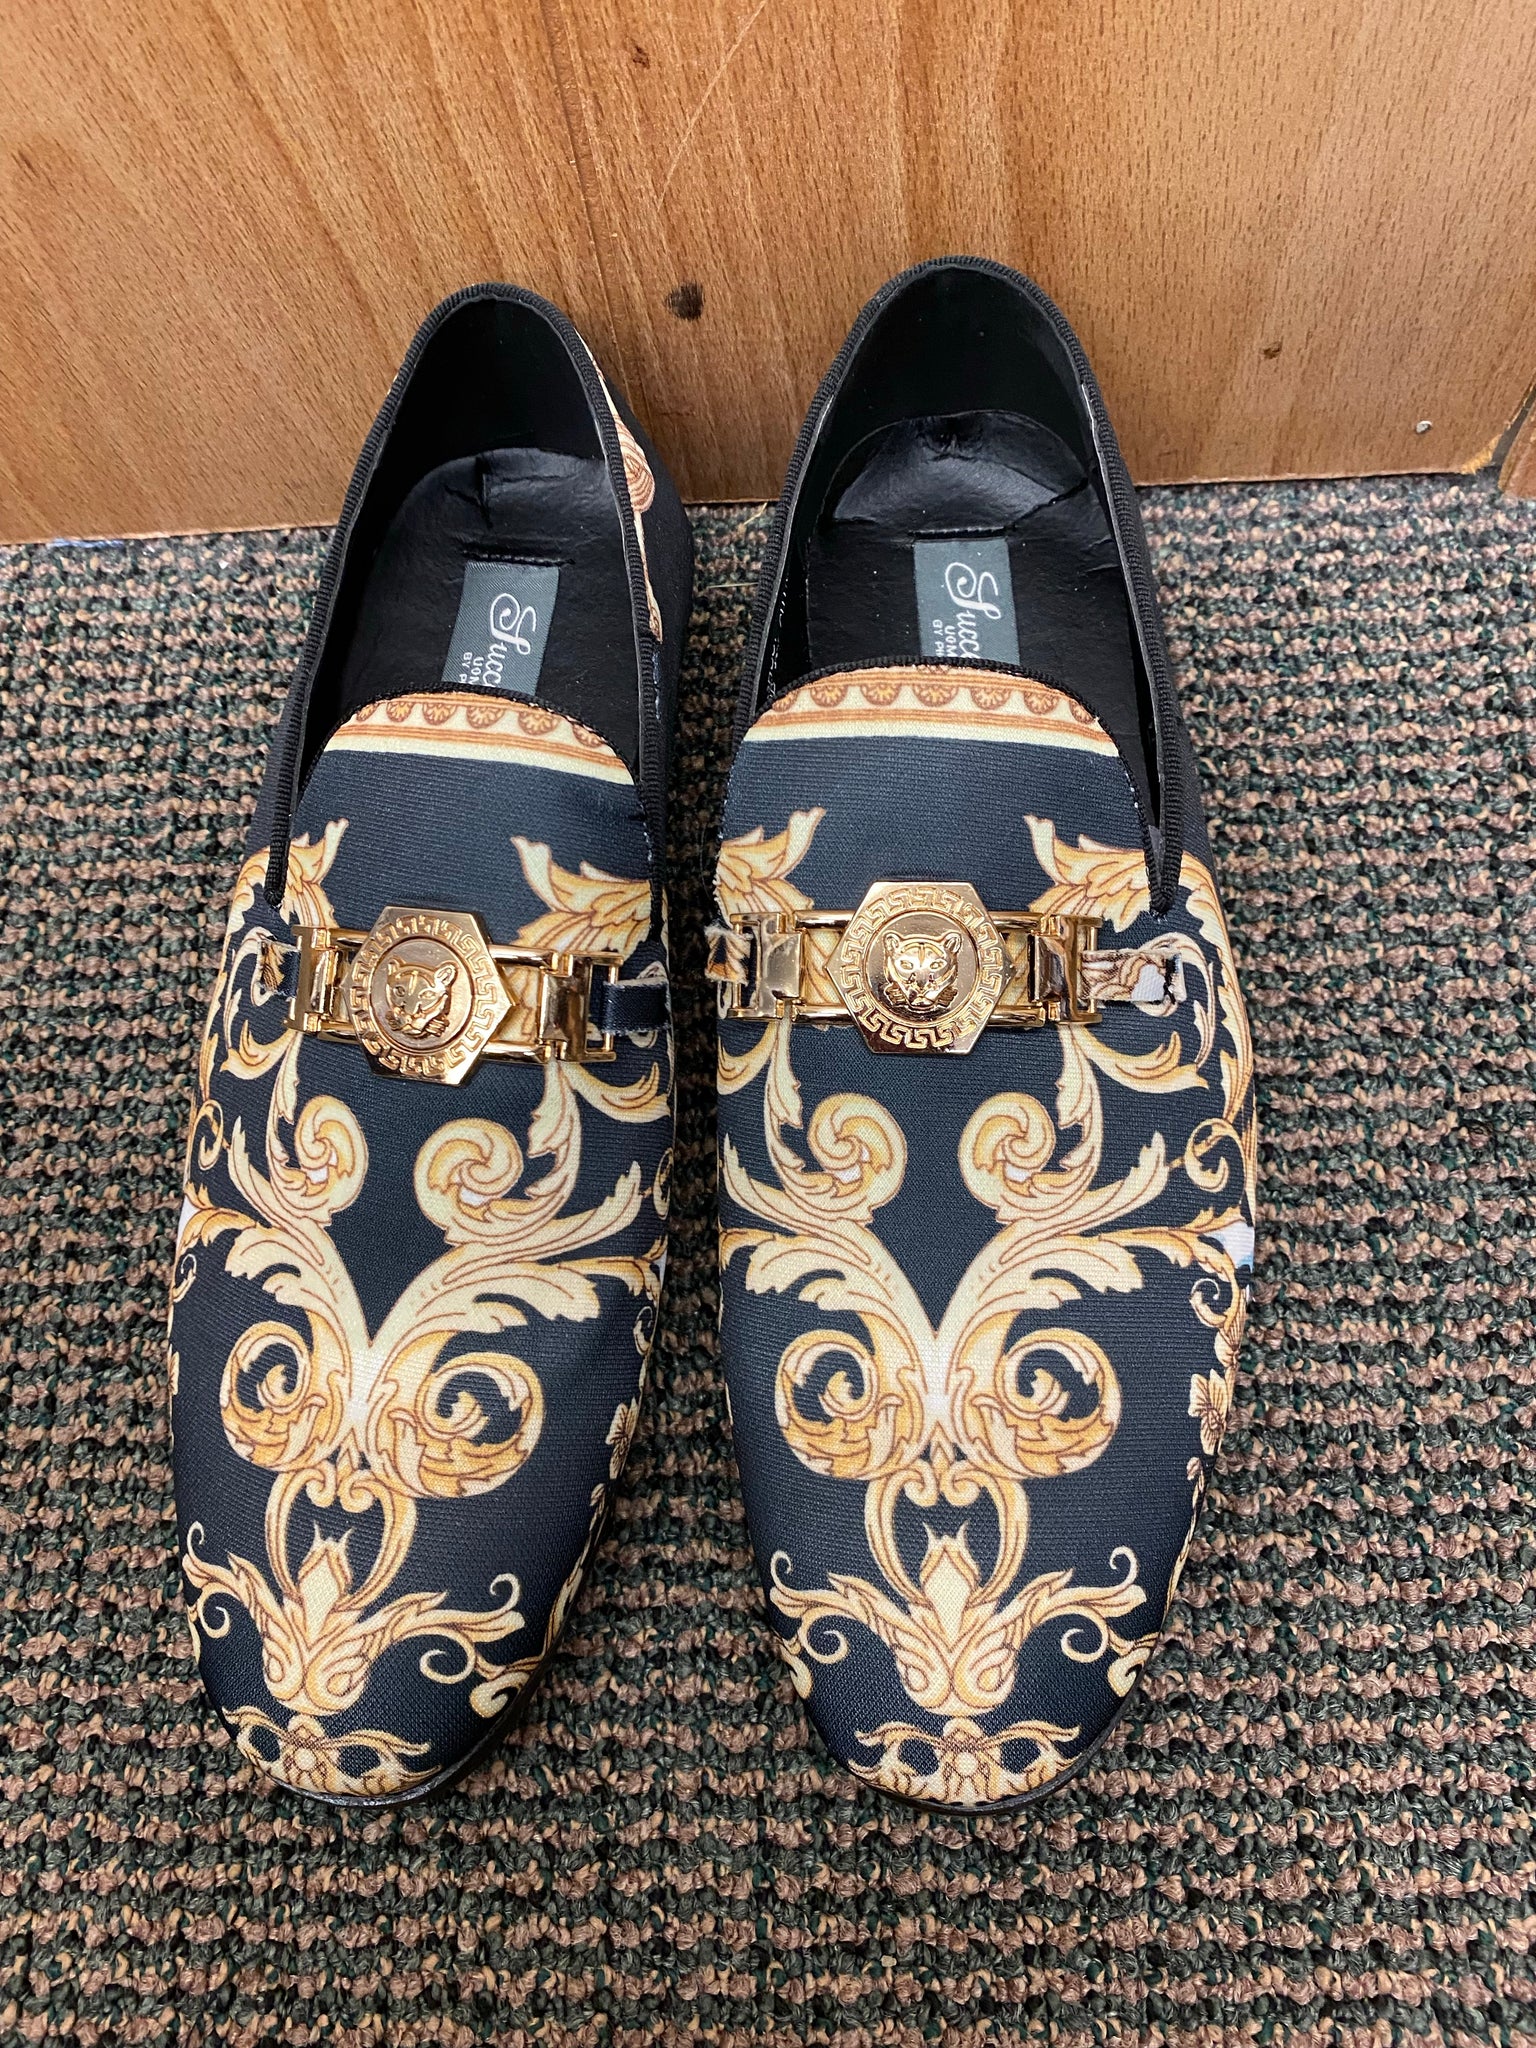 versace men’s dress shoes